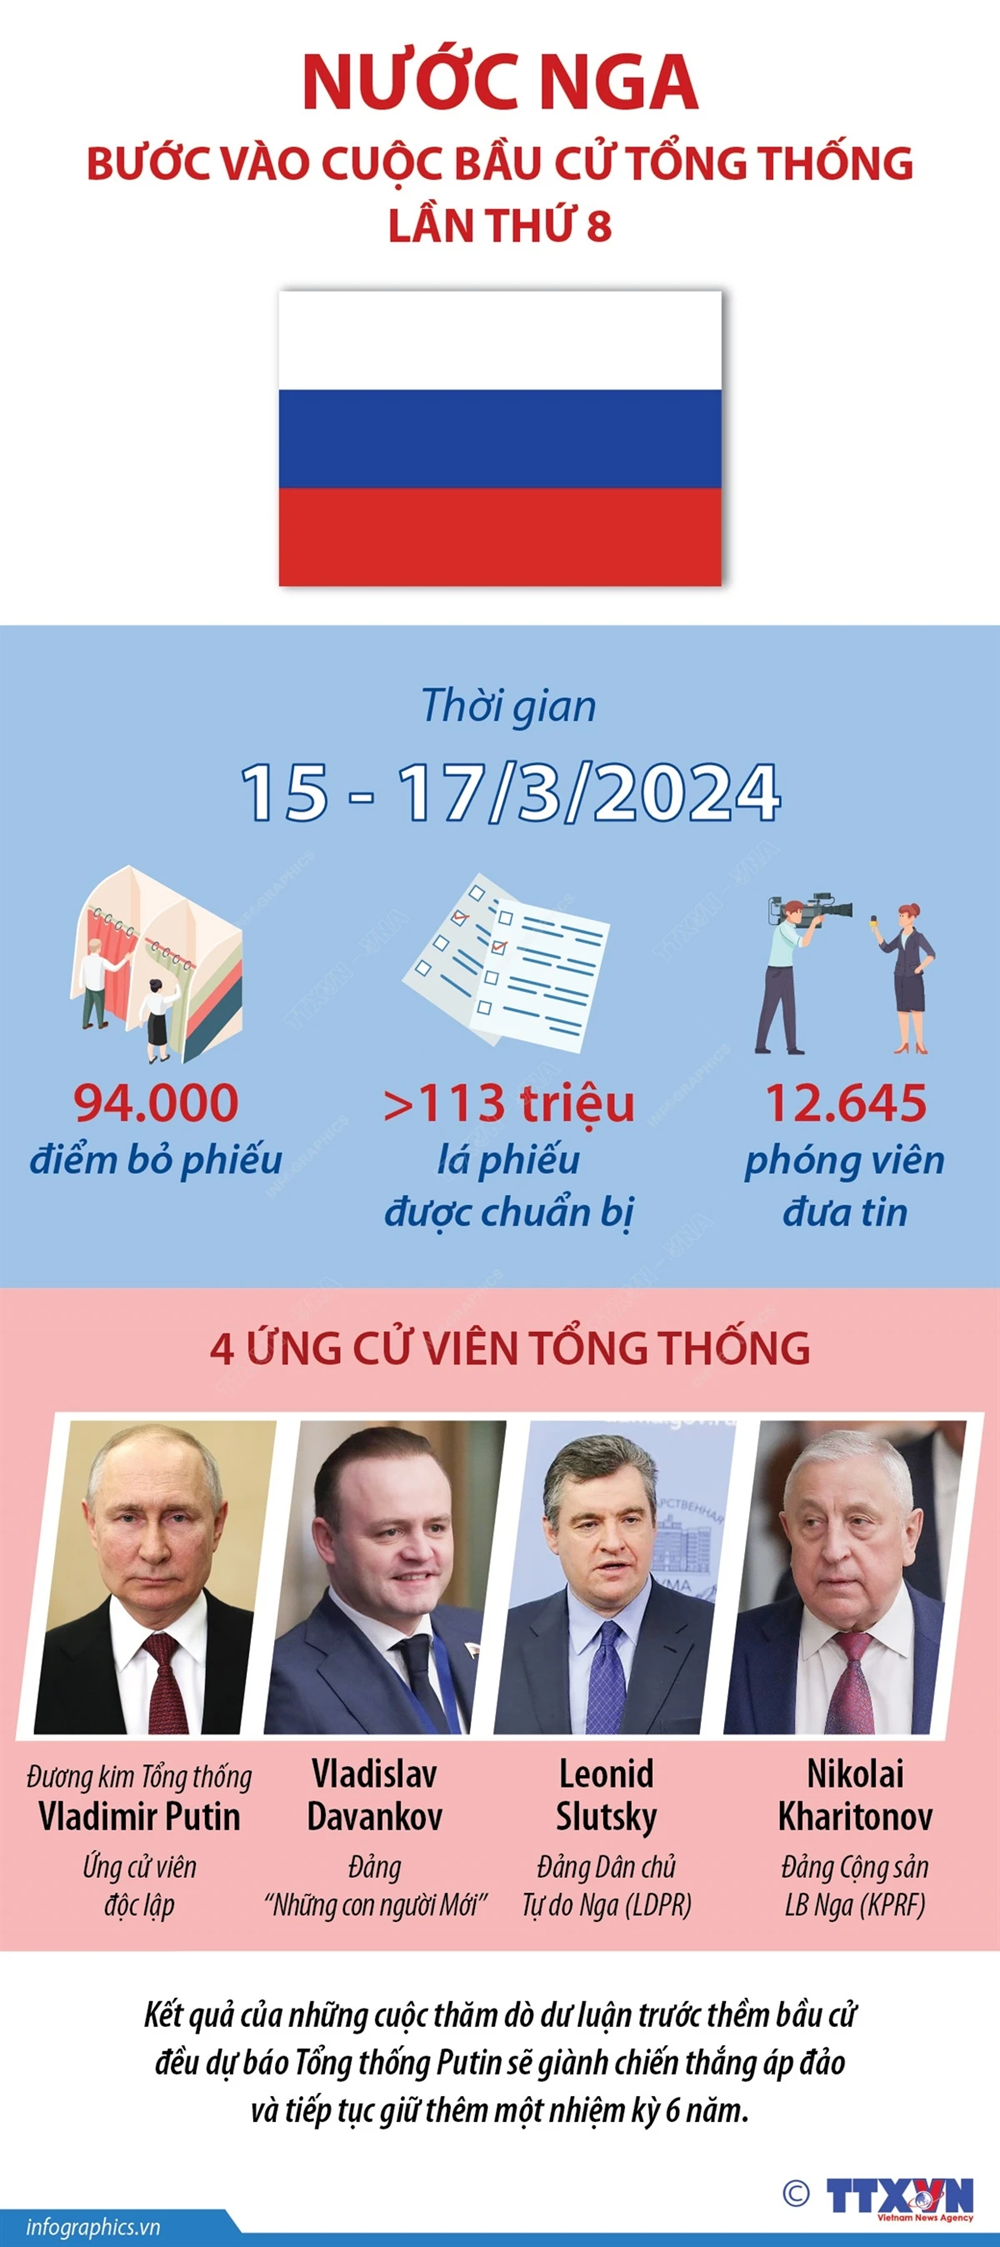 Nước Nga chính thức bước vào cuộc Bầu cử Tổng thống 2024 - ảnh 1